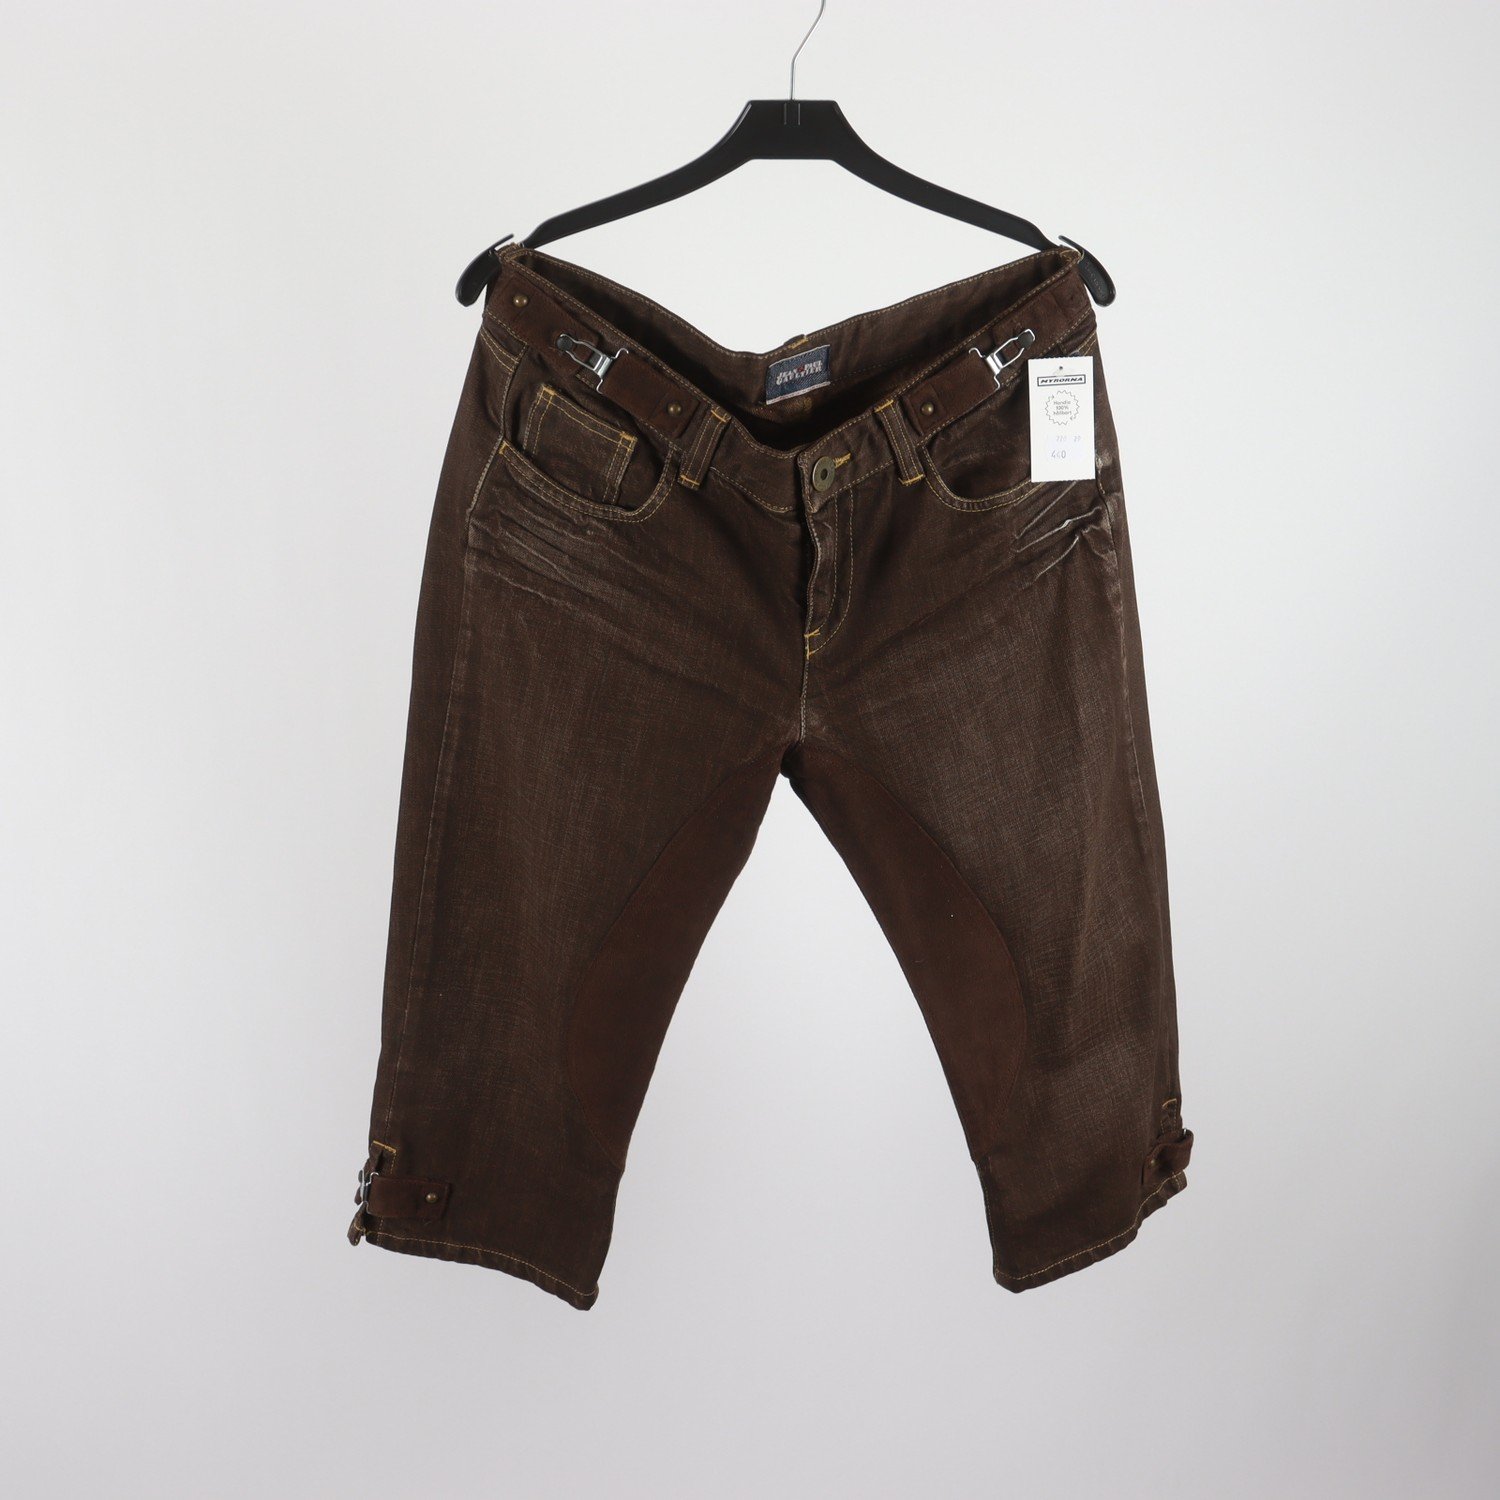 Jeans, Capri, Jean Paul Gaultier, brun, stl. 30